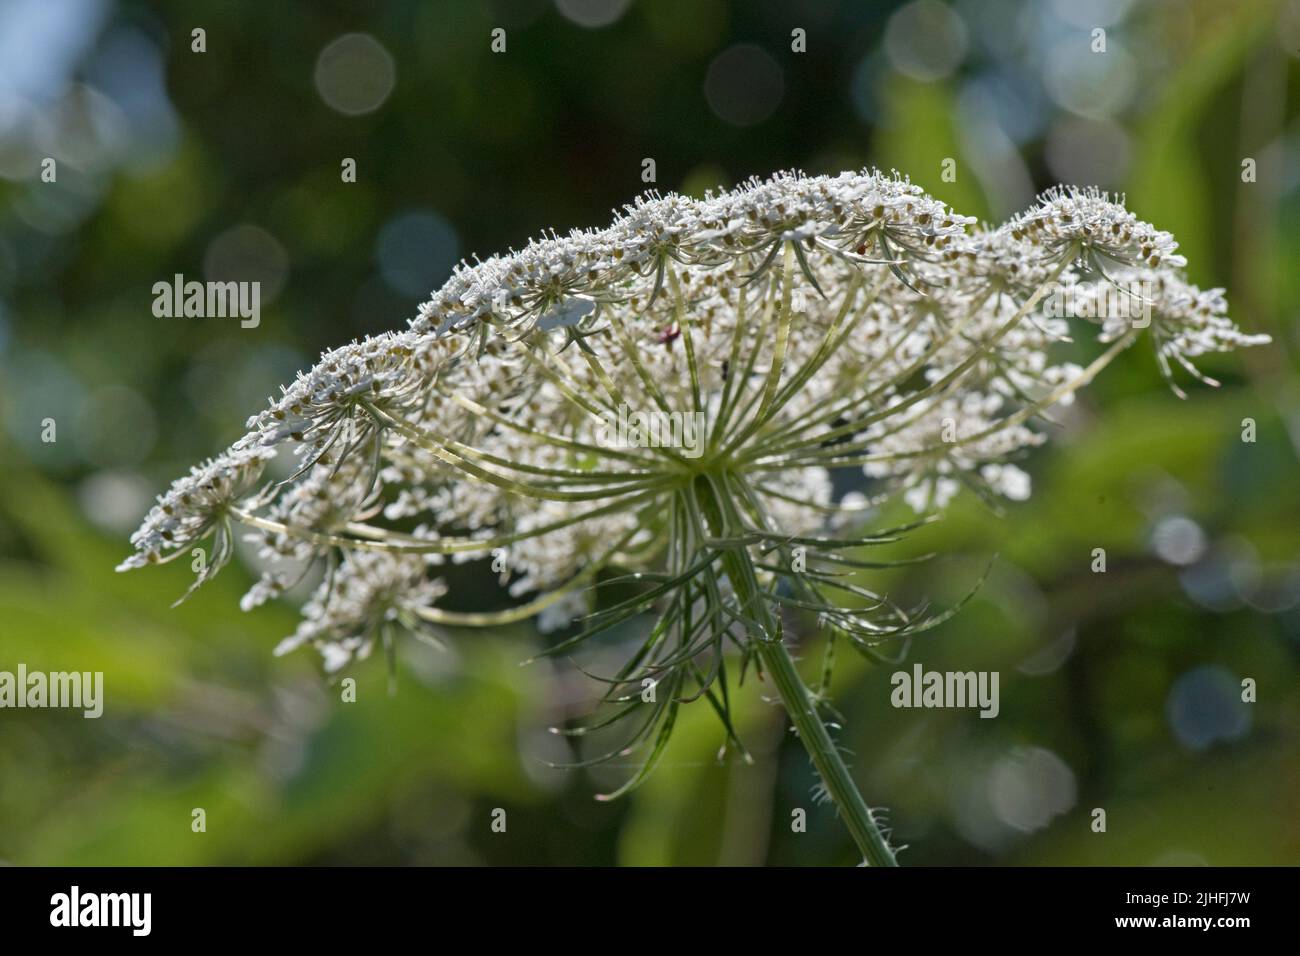 Carotte sauvage ou dentelle de la reine Anne (Daucus carota) vue latérale des umbes fleuris avec fleurs blanches et bractées vertes caractéristiques, Berkshire, Ju Banque D'Images